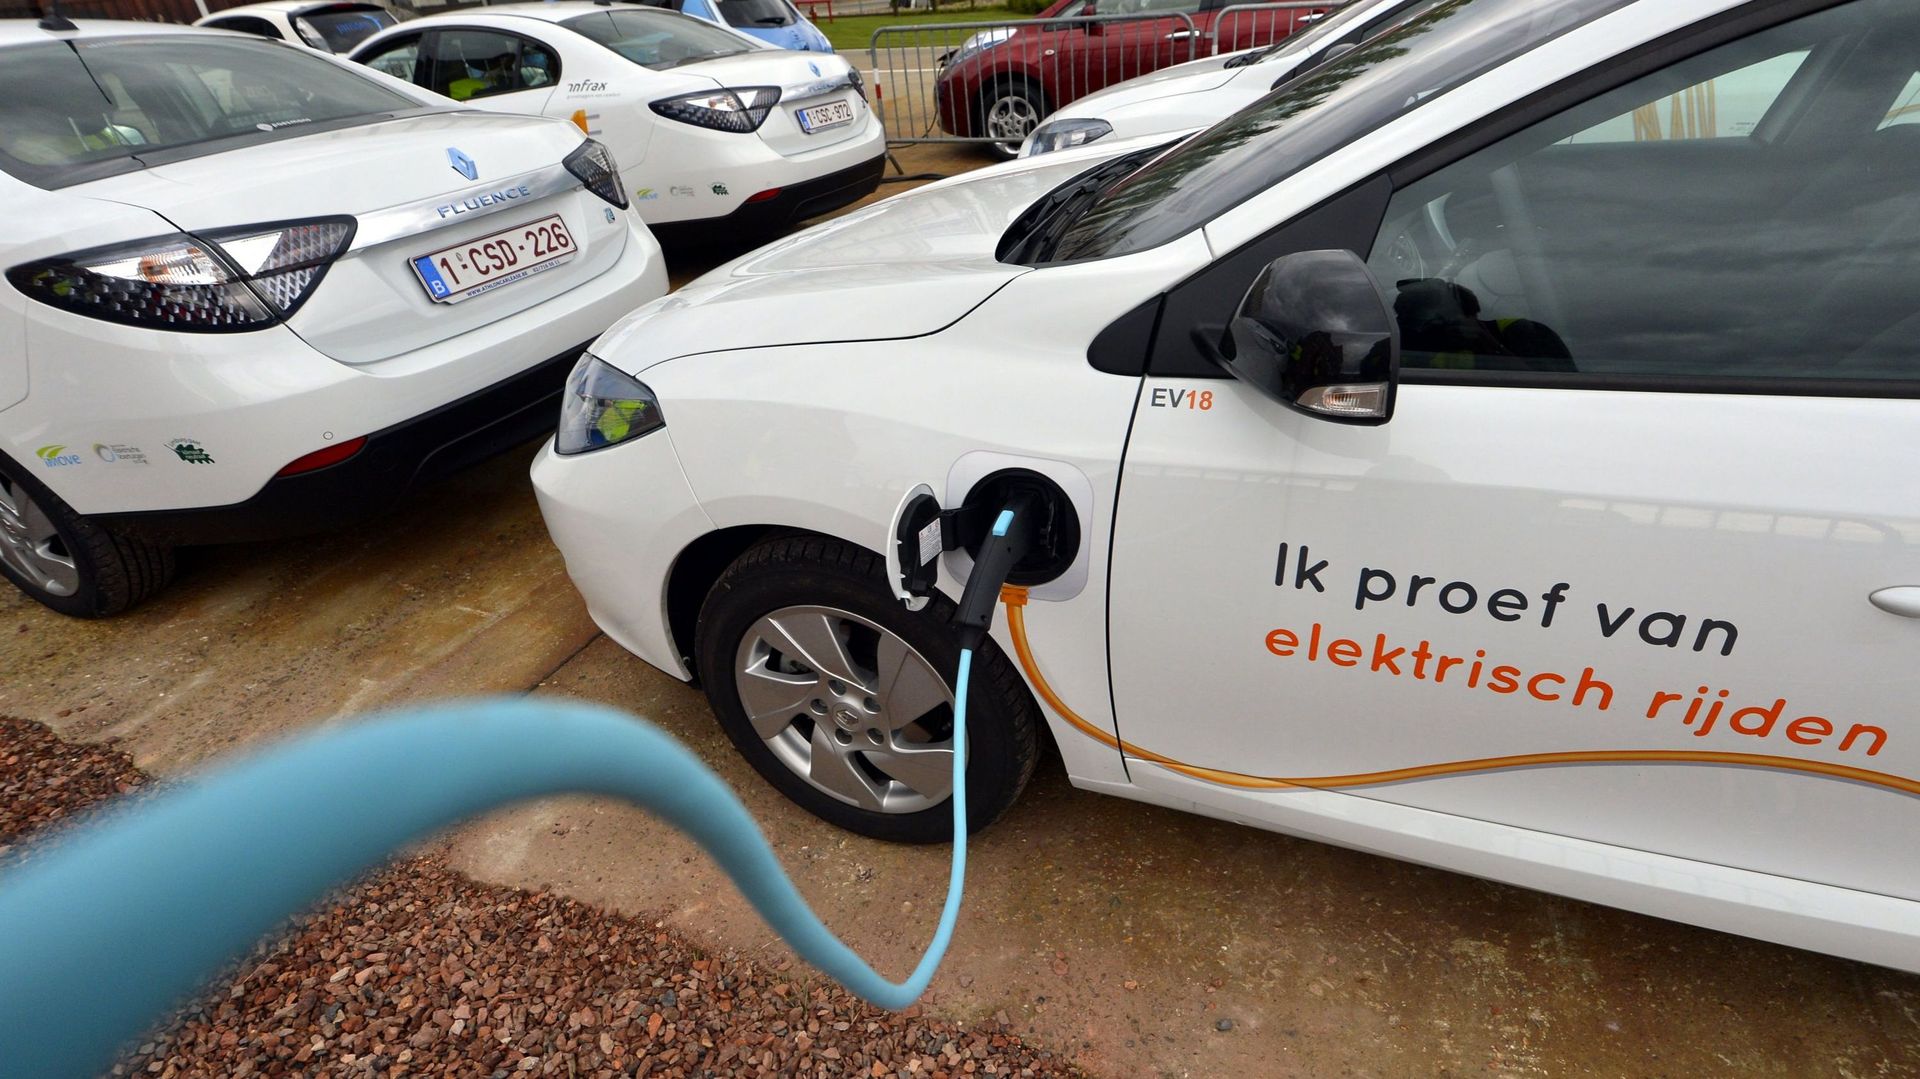 Un consommateur belge sur trois prévoit d'acheter une voiture électrique (Deloitte)